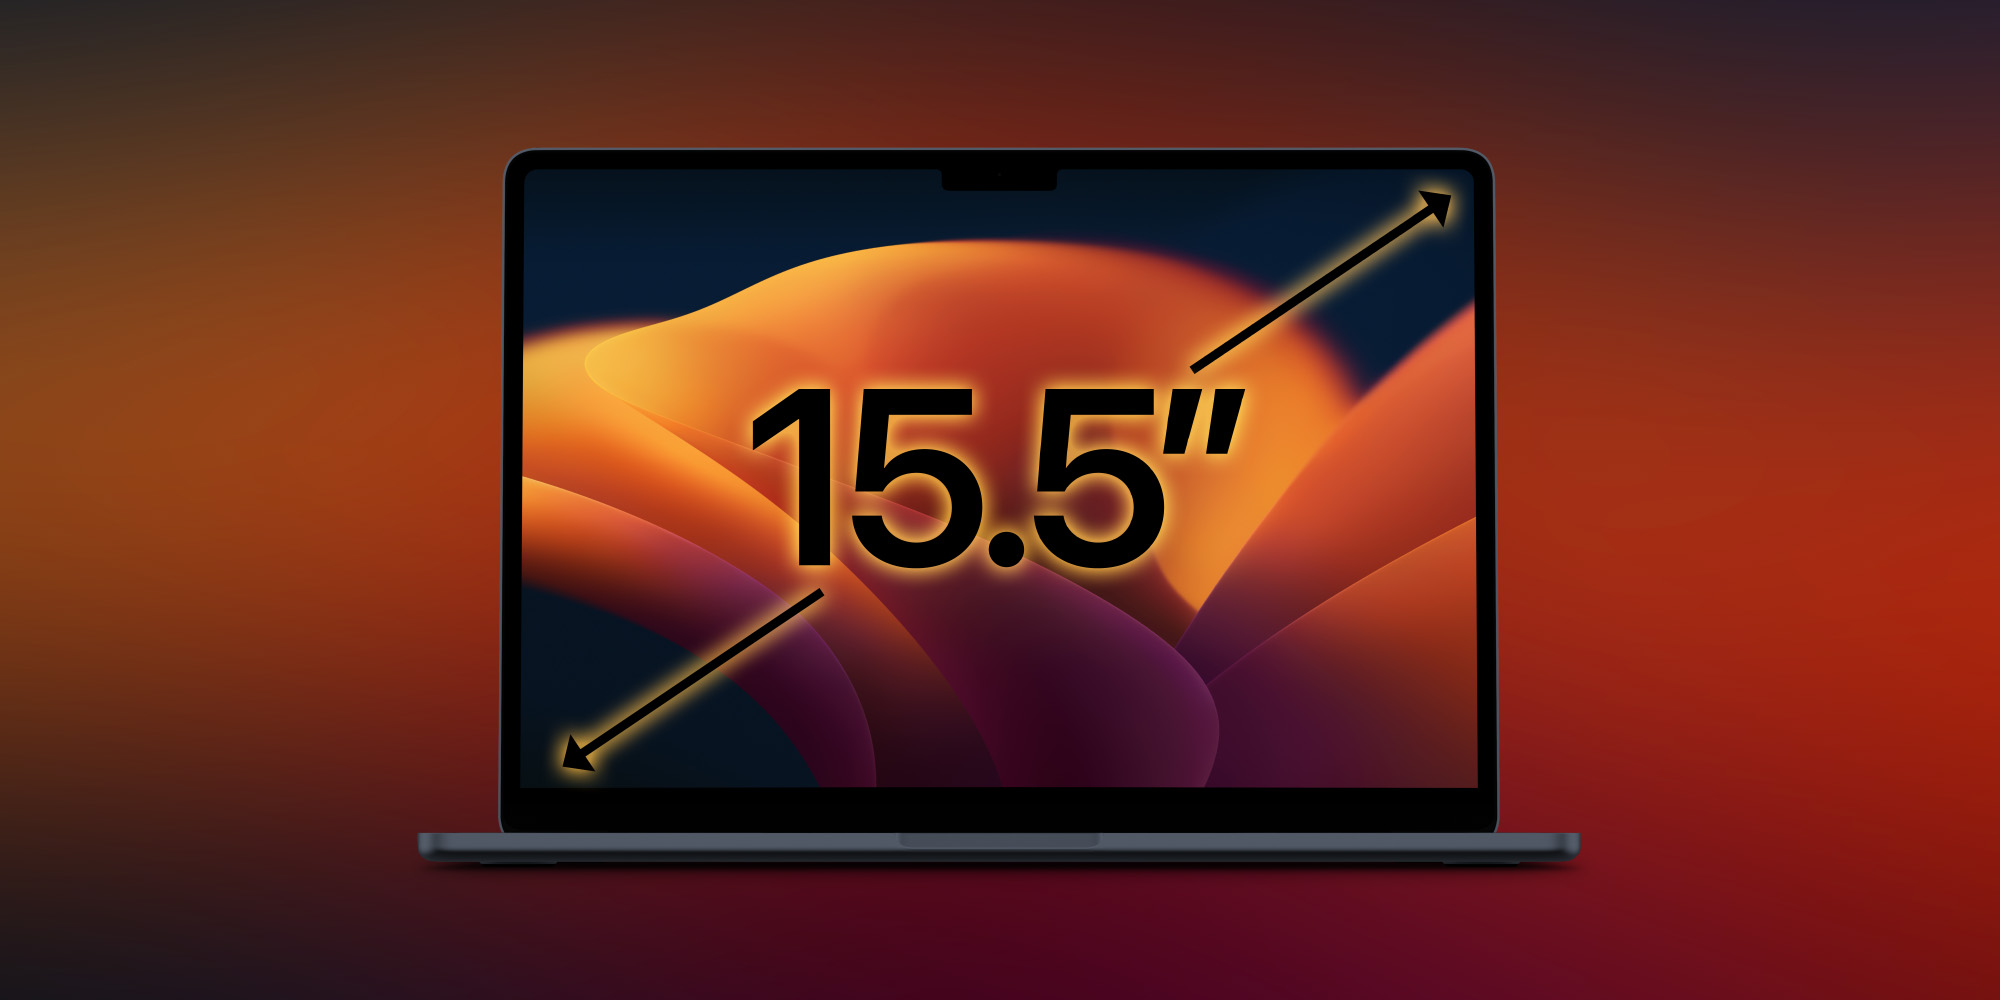 Tấm nền màn hình MacBook Air 15-inch được tăng tốc sản xuất chuẩn bị ra mắt thiết bị